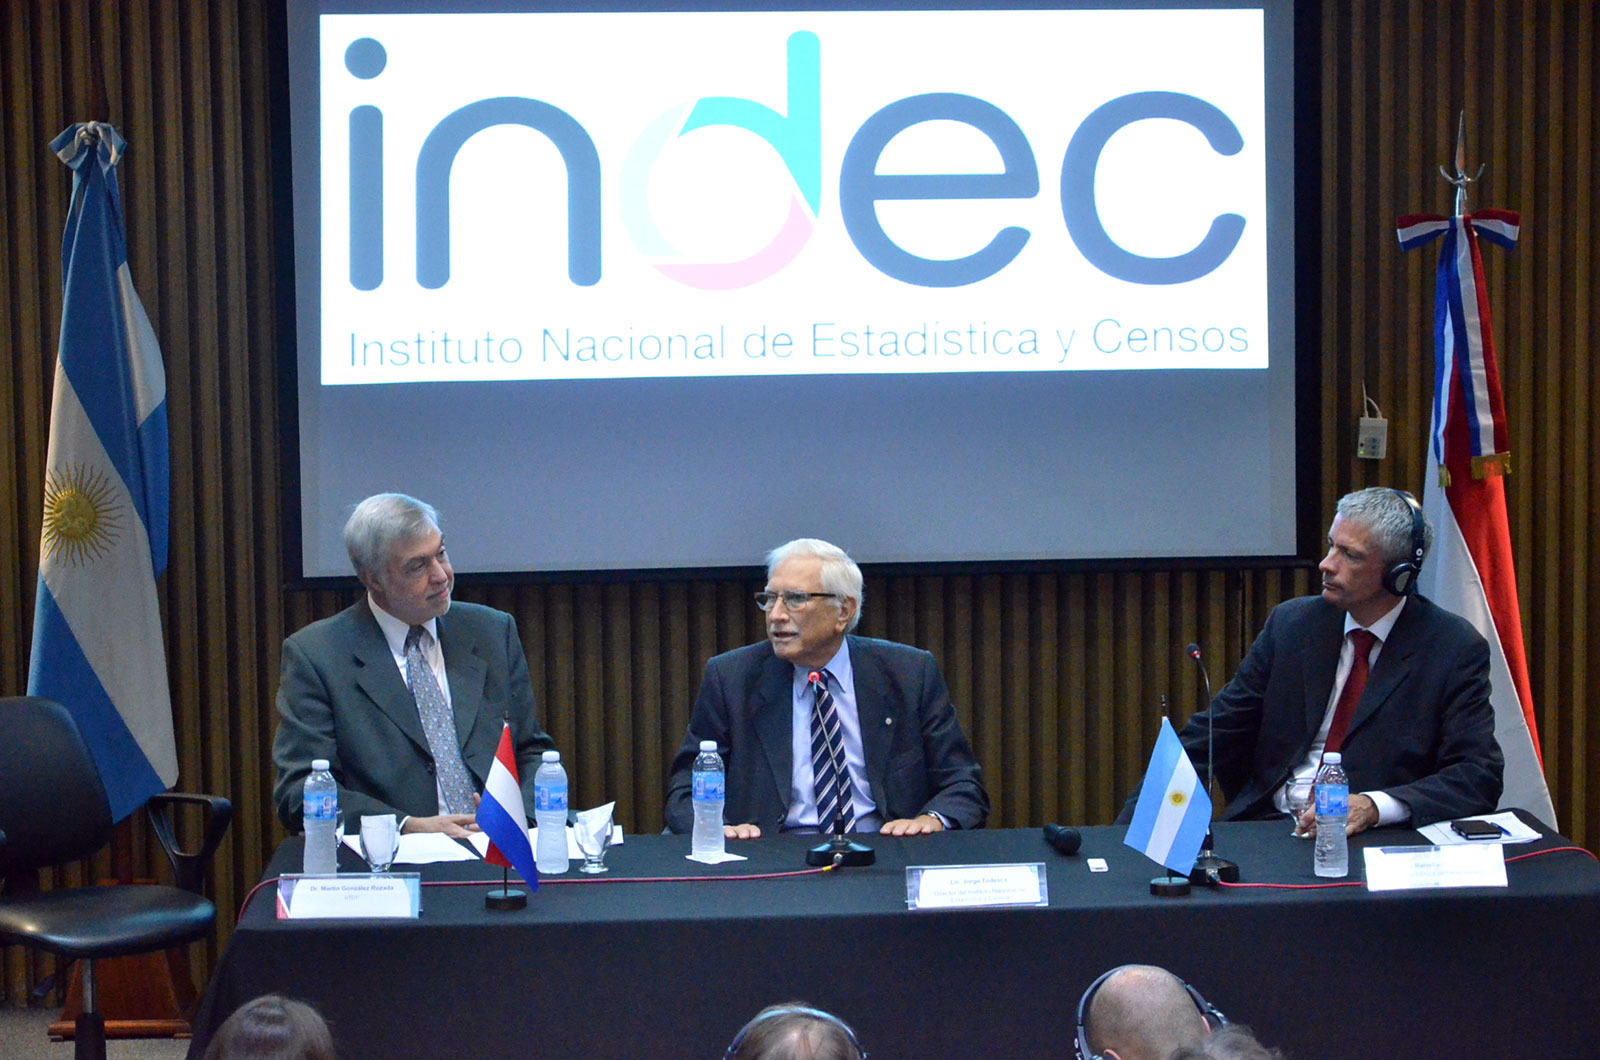 4/5/17. El director del INDEC, Jorge Todesca, participó de la conferencia sobre la implementación de big data en las estadísticas públicas.